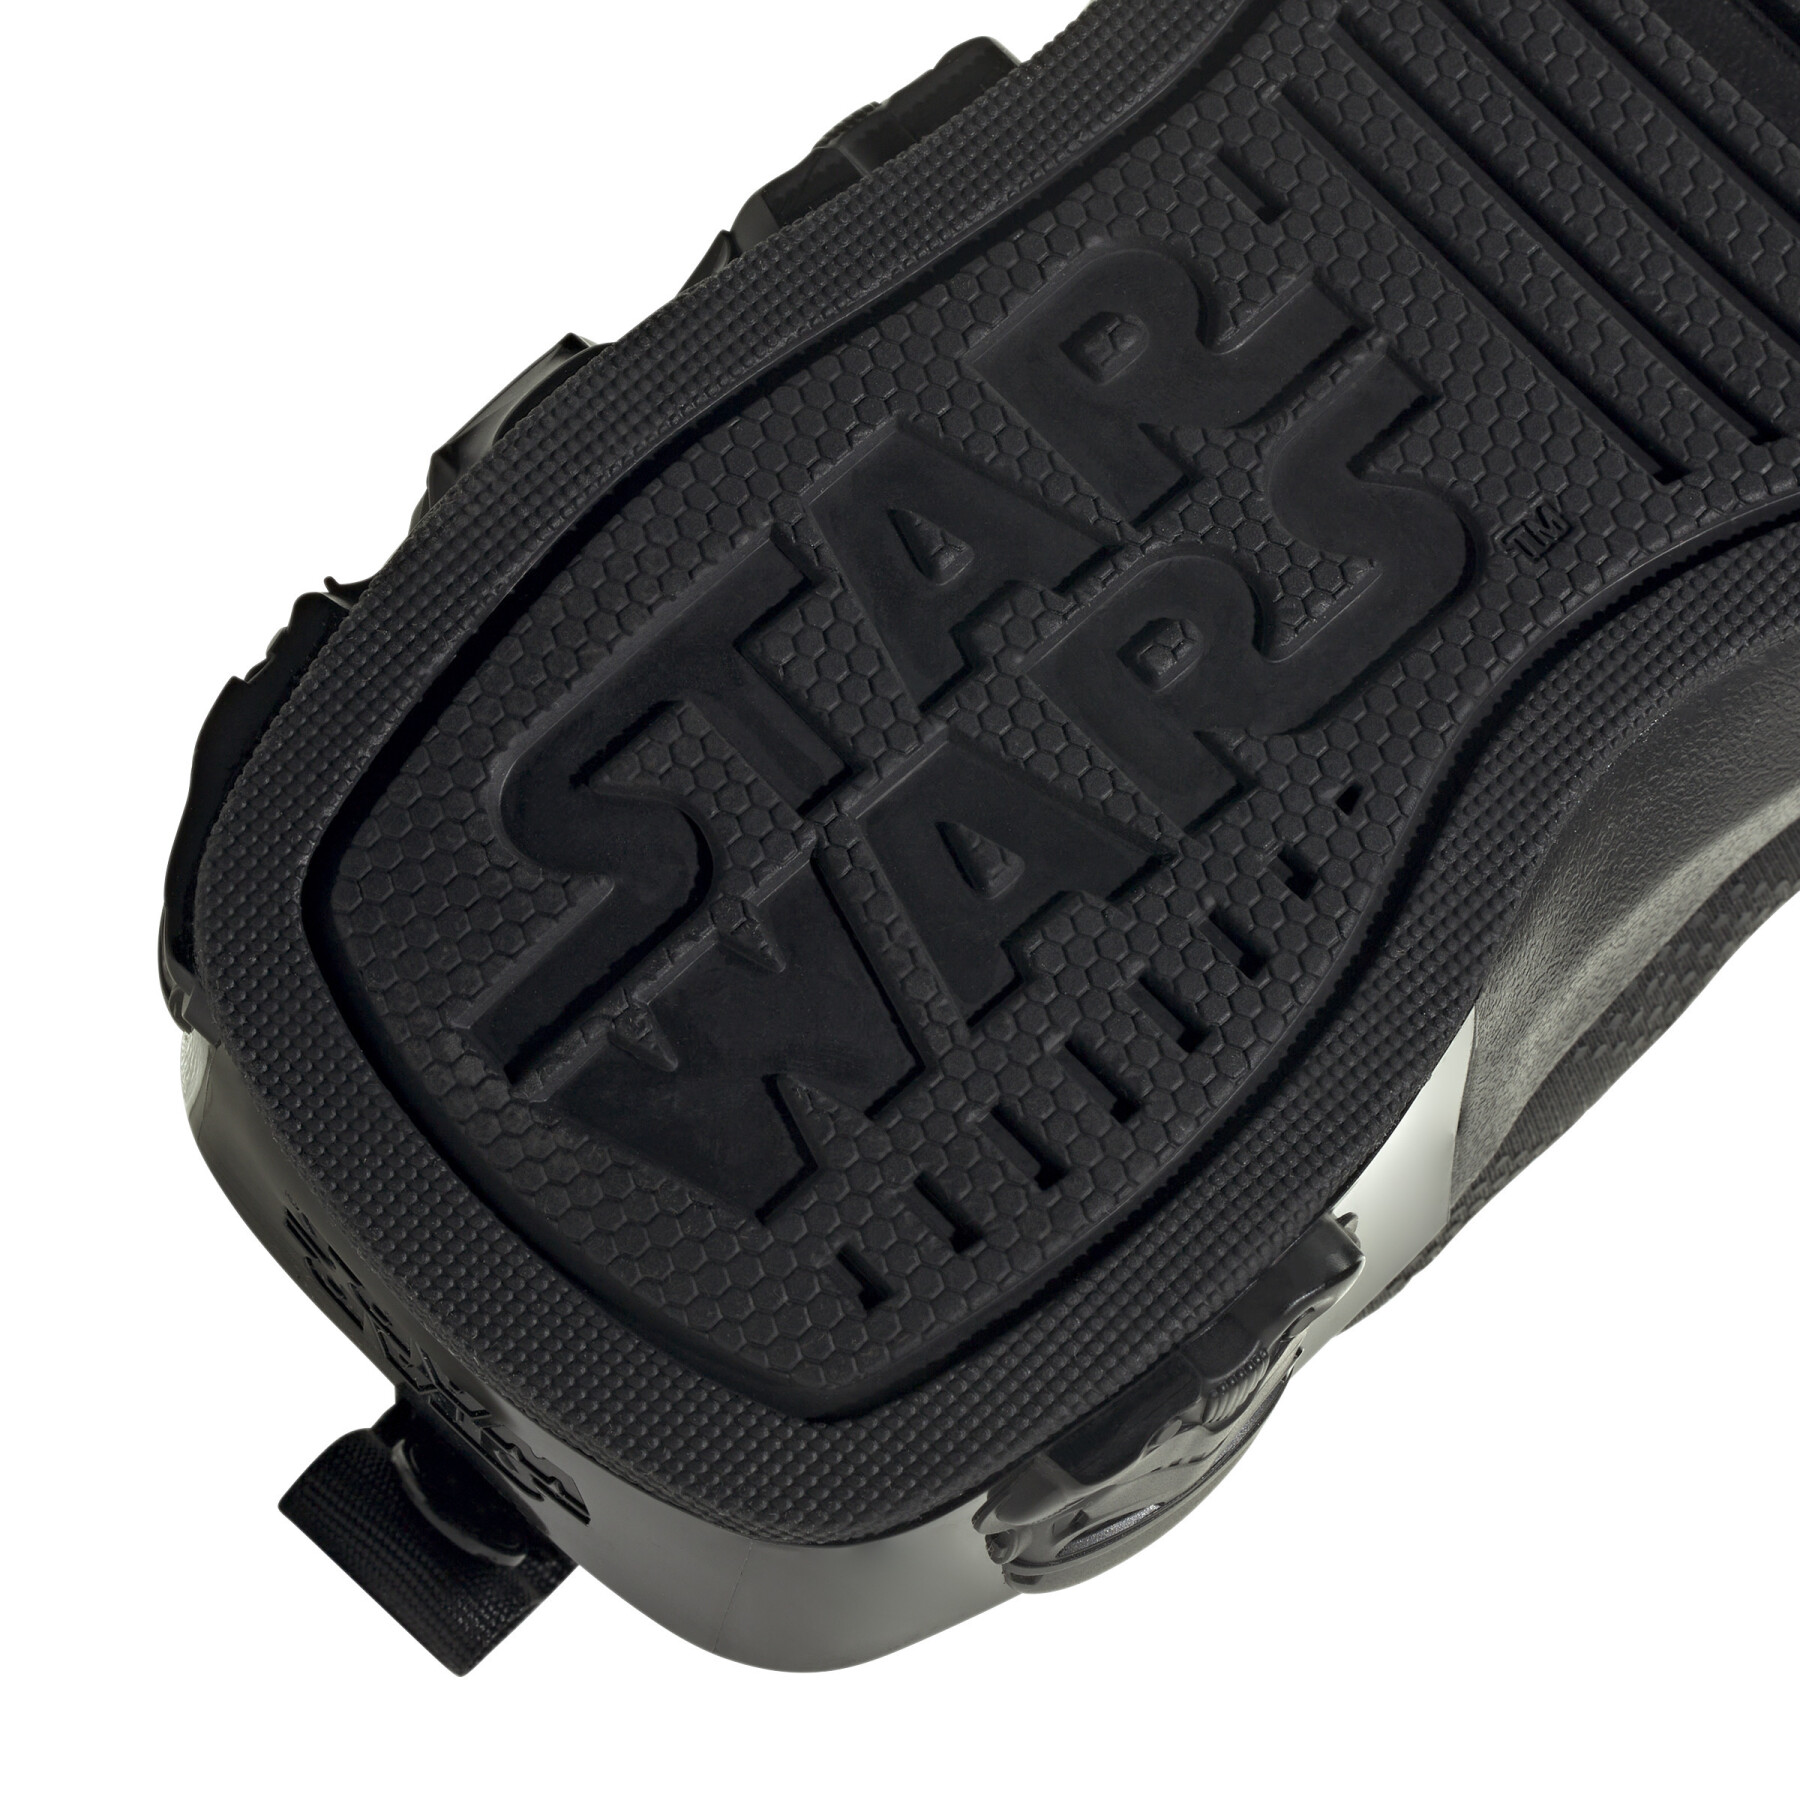 Scarpe da ginnastica per bambini adidas Star Wars Runner